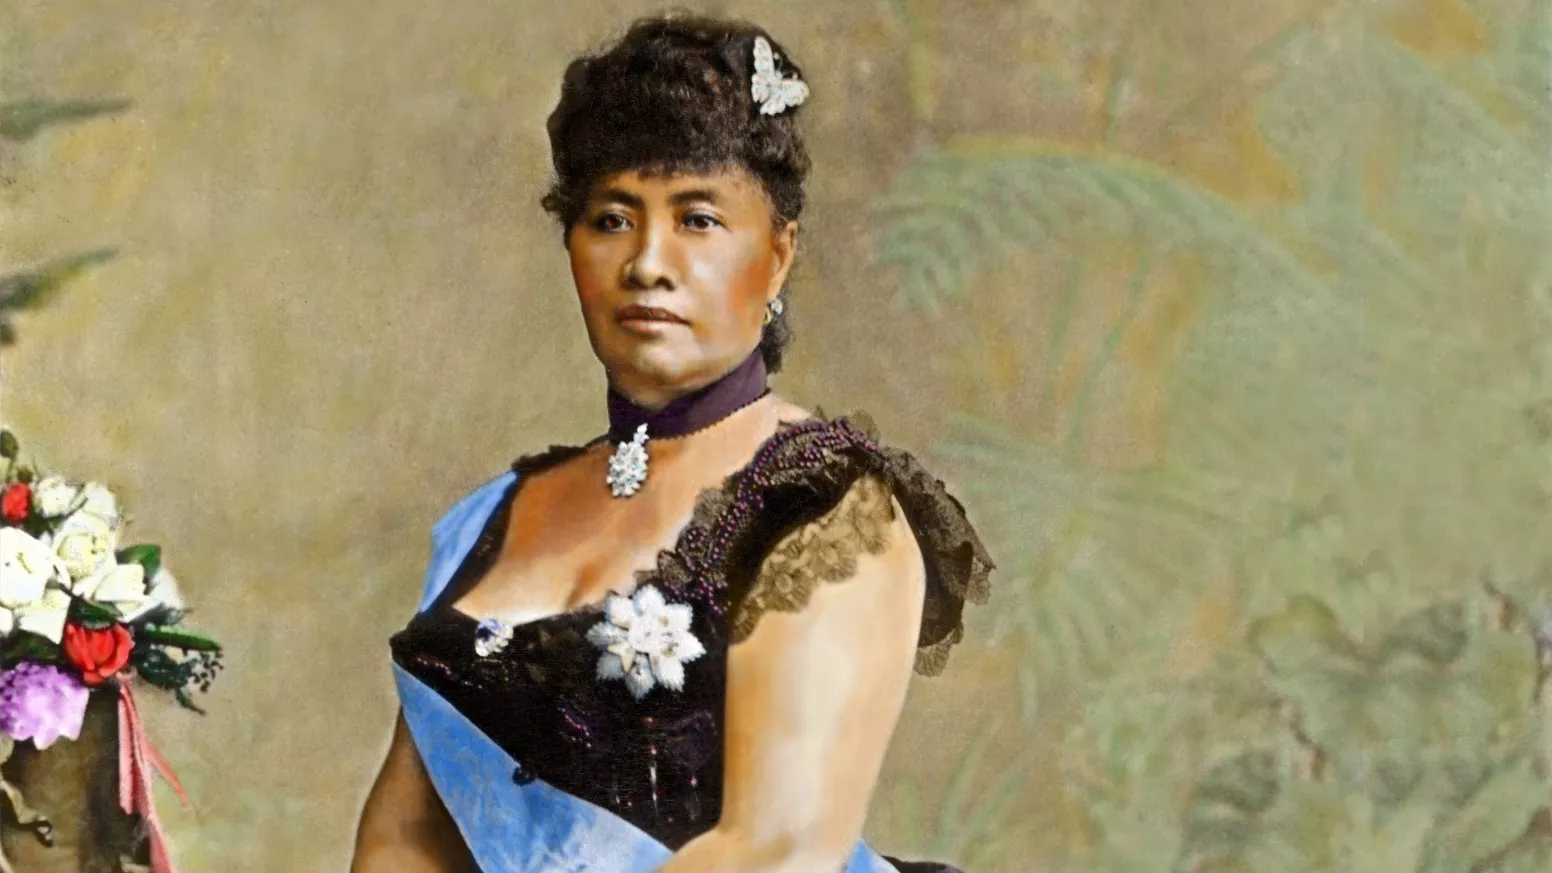 El 1892, Lili'uokalani promulgà una nova Constitució per tal de restablir els drets arrabassats durant el regnat del seu germà i antecessor Kalakaua